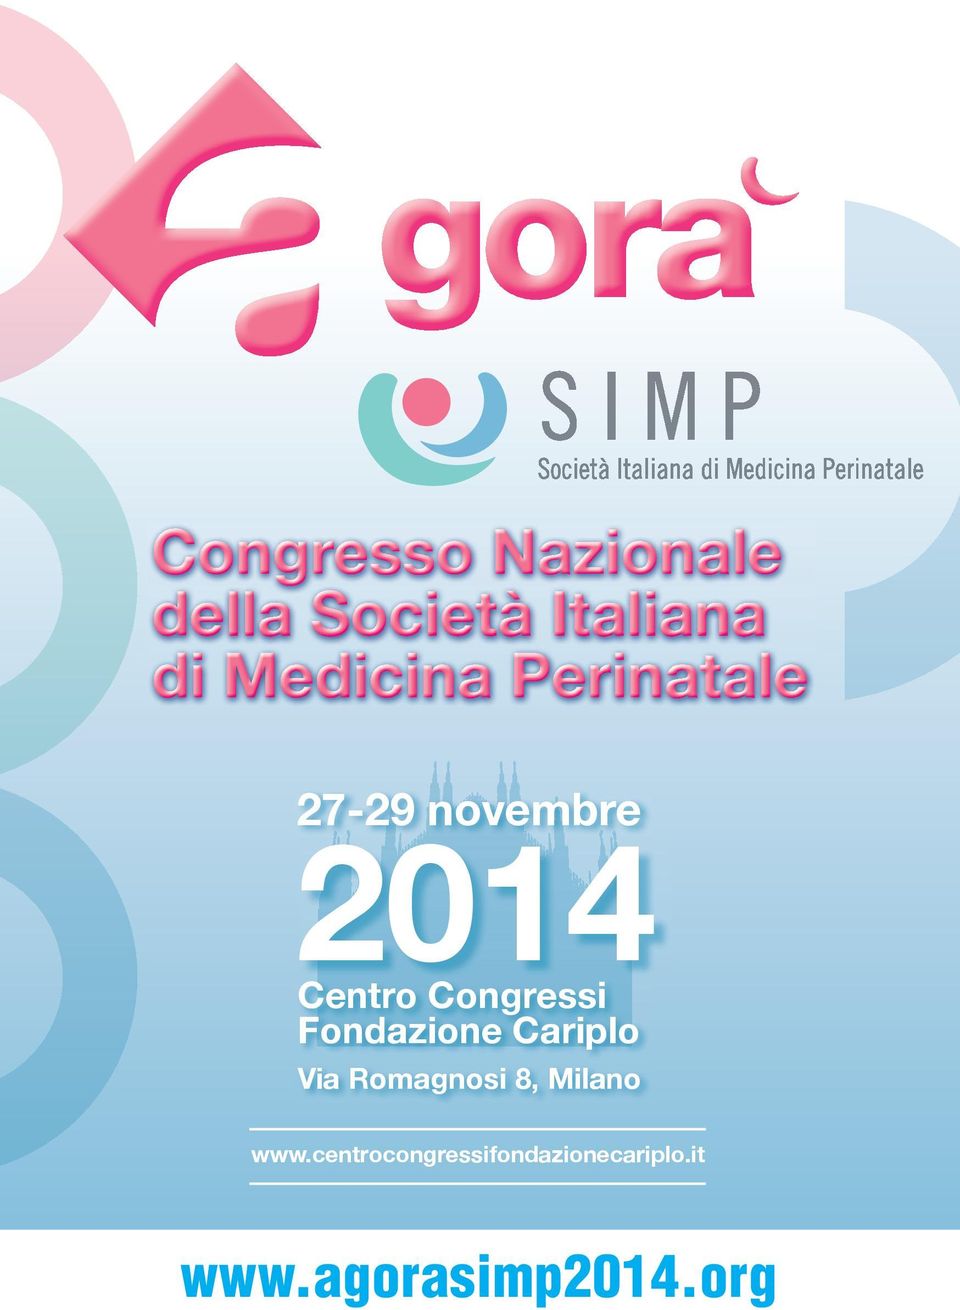 Congressi Fondazione Cariplo Via Romagnosi 8,